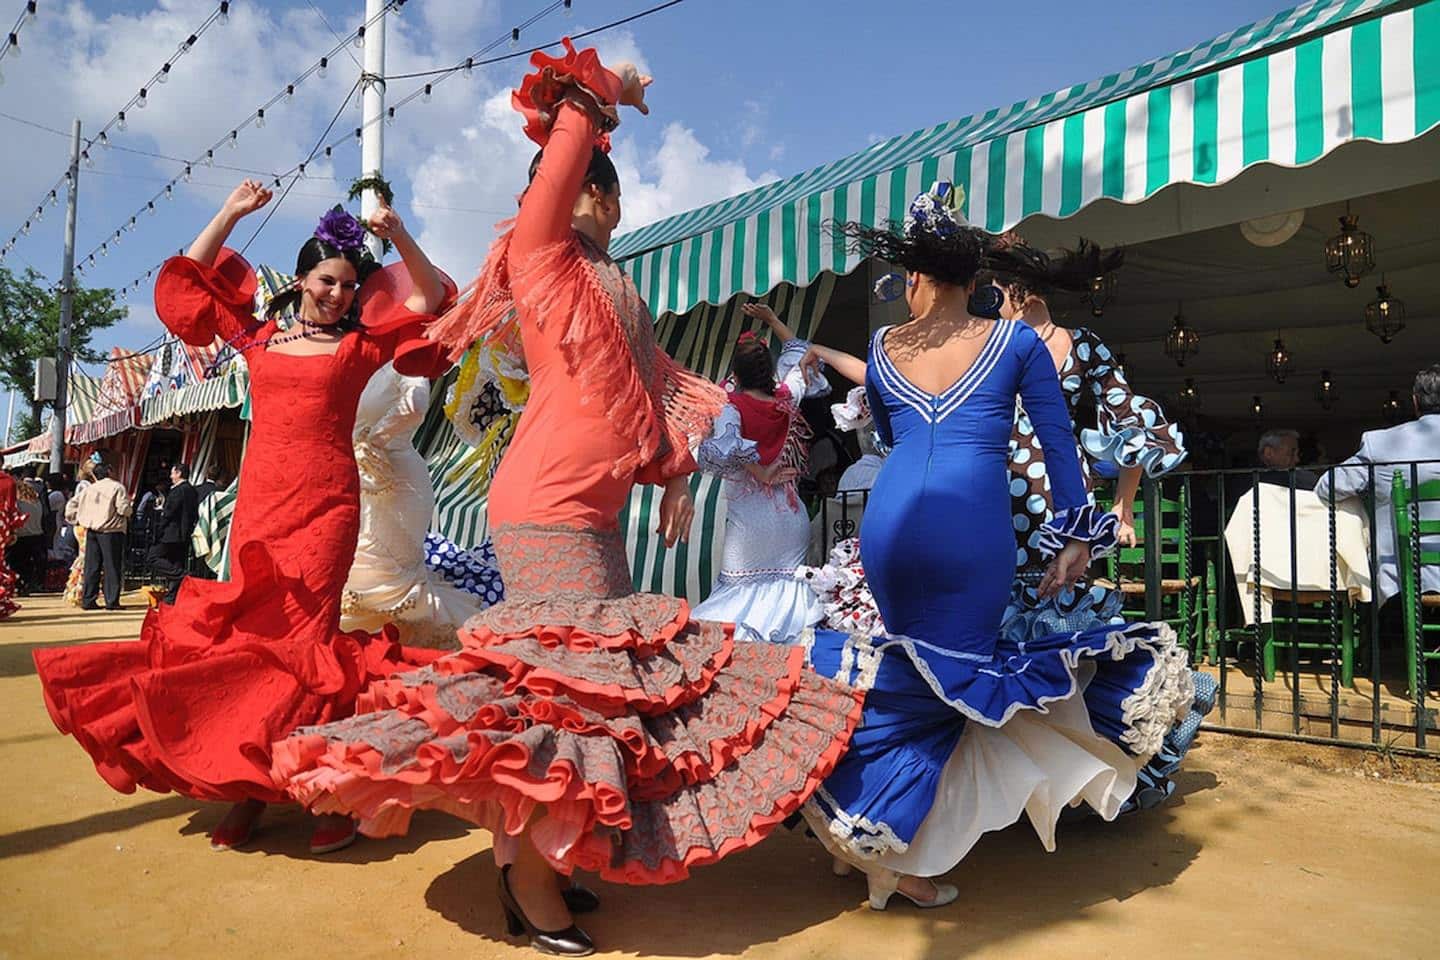 women twirling in flamenco dresses for Feria de Sevilla in Spain